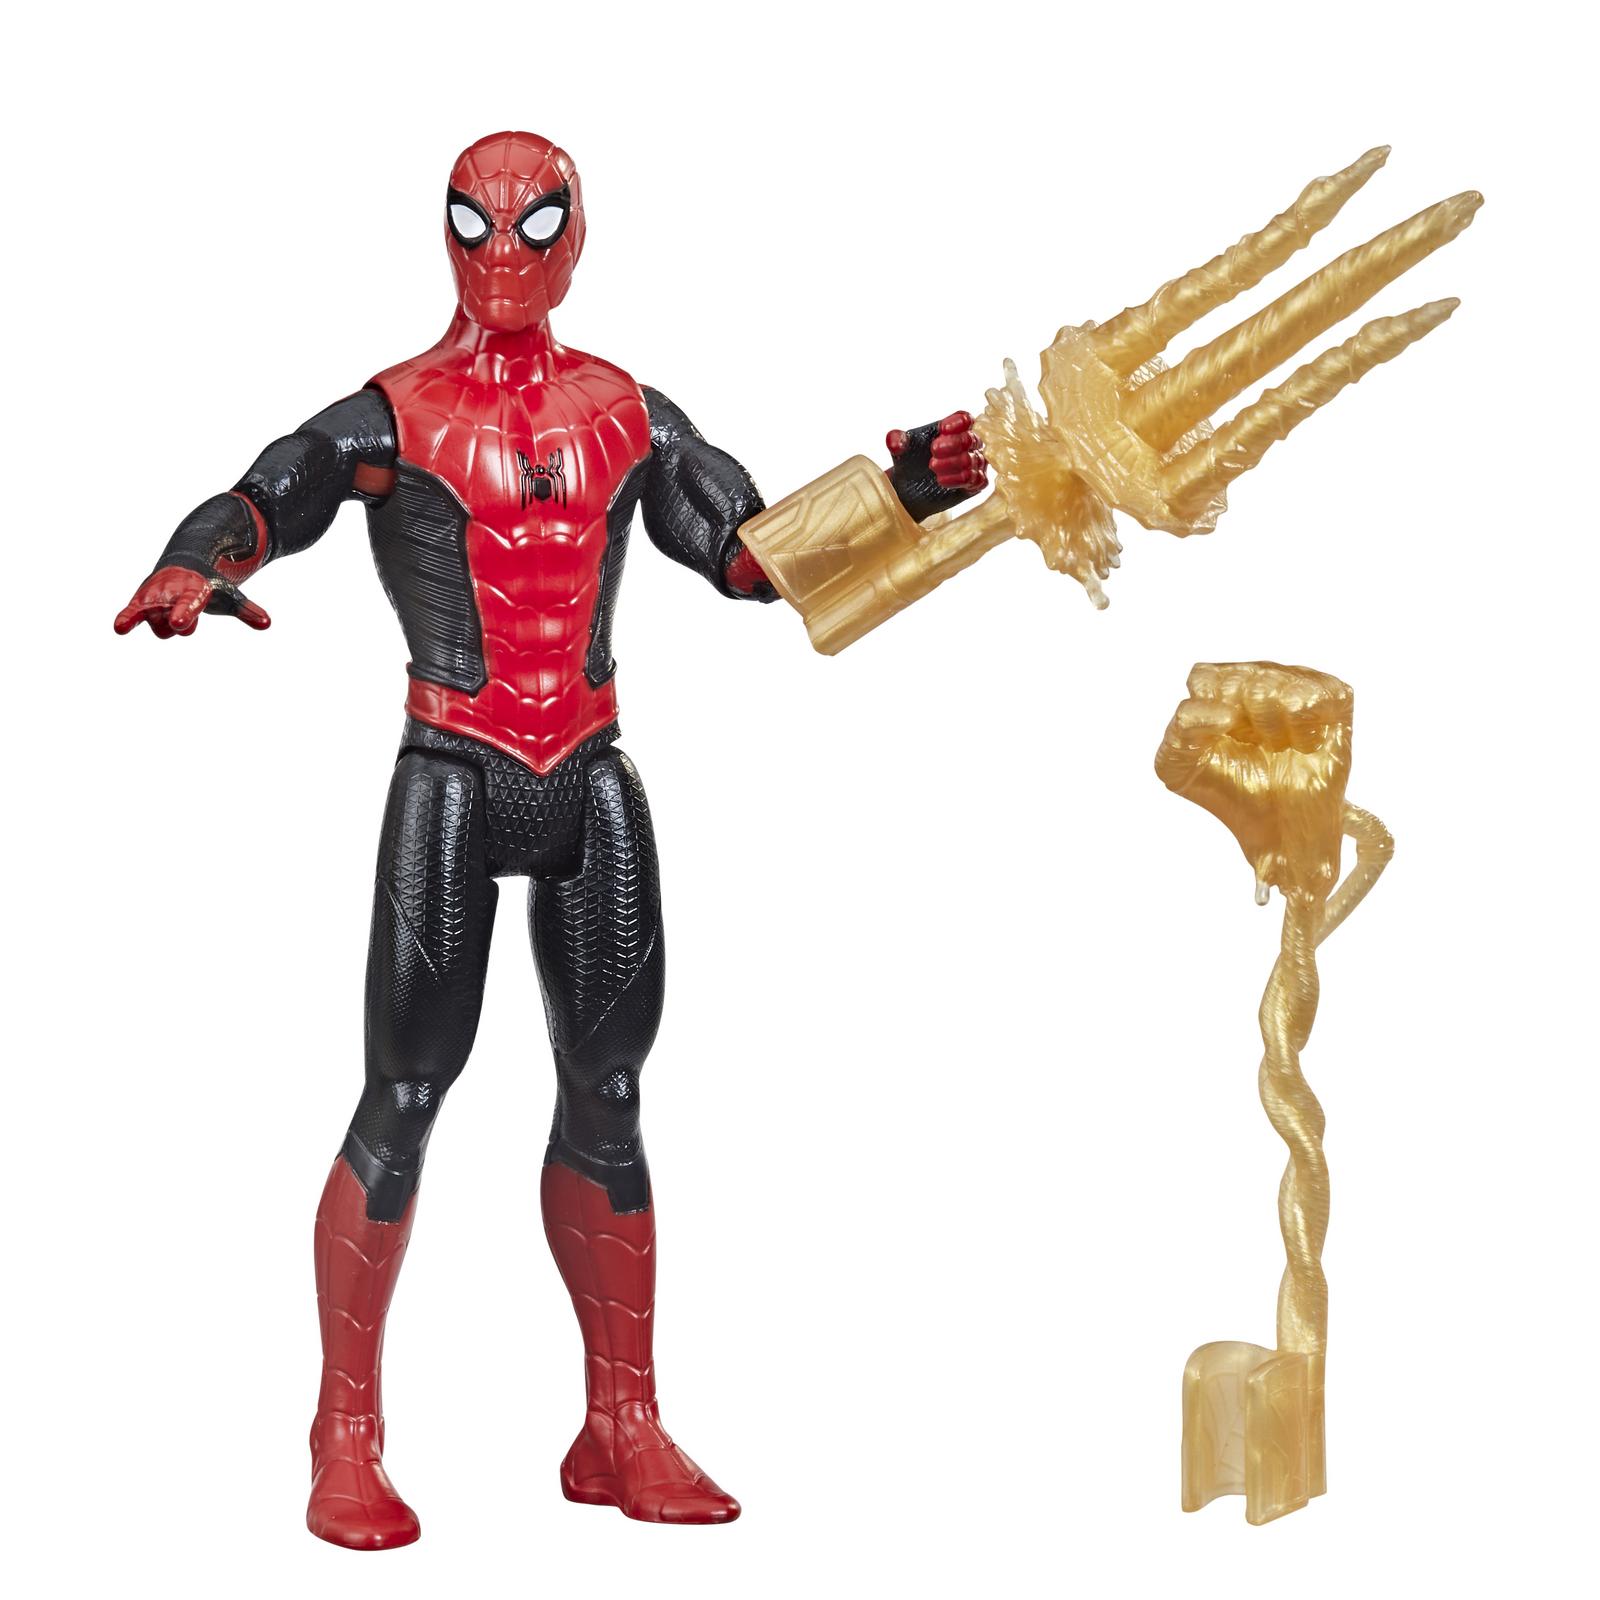 Фигурка Человек-Паук (Spider-man) Человек-паук Пионер с дополнительным элементом и аксессуаром F19125X0 - фото 1